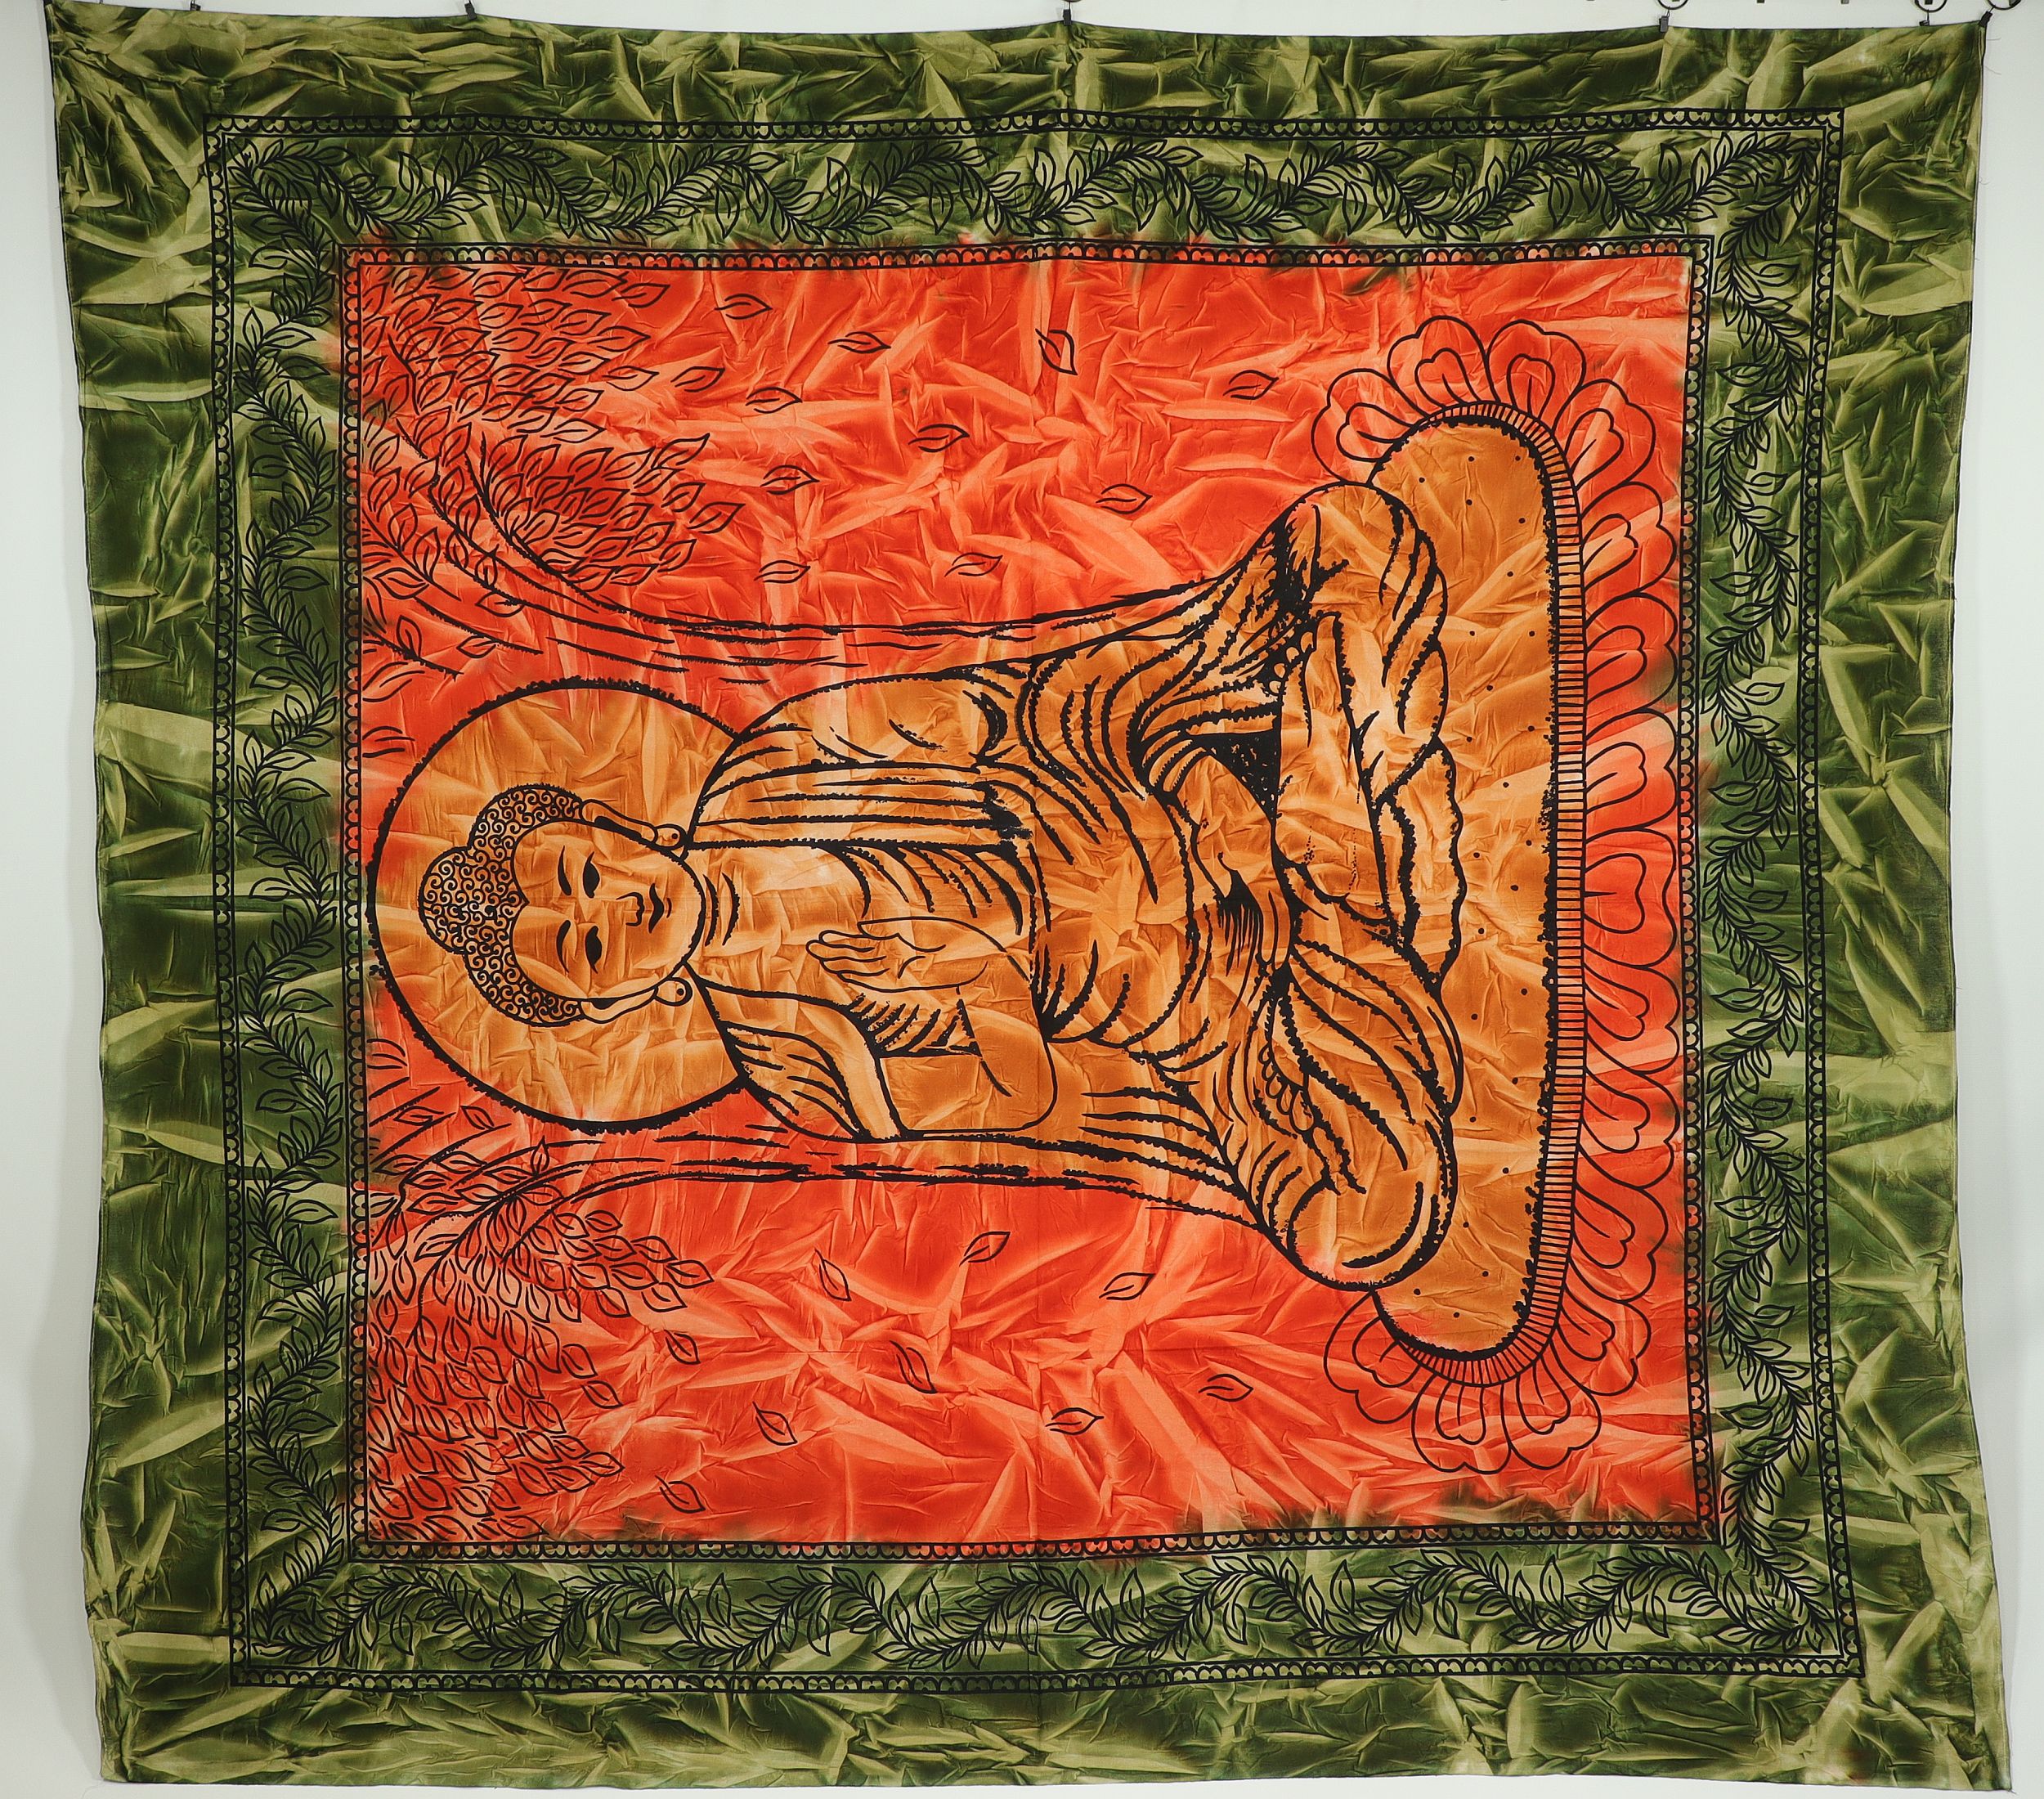 Wandtuch XXL 210x230 - Buddha - 100% Baumwolle - detailreicher indischer Druck - mehrfarbig - dekoratives Tuch, Wandbild, Tagesdecke, Bedcover, Vorhang, Picknick-Decke, Strandtuch